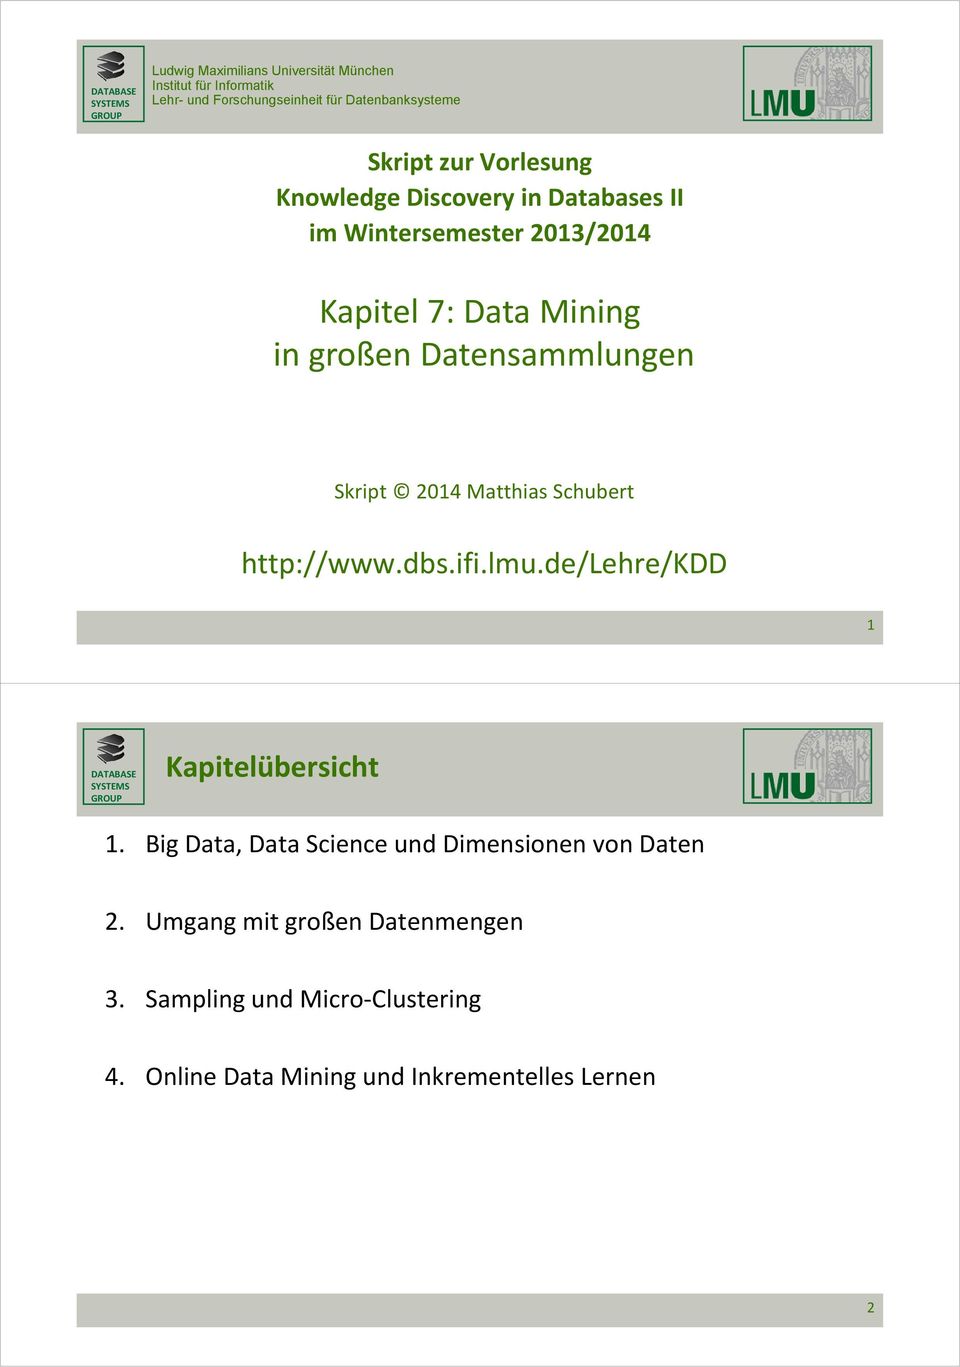 Datensammlungen Skript 2014 Matthias Schubert http://www.dbs.ifi.lmu.de/lehre/kdd 1 Kapitelübersicht 1.